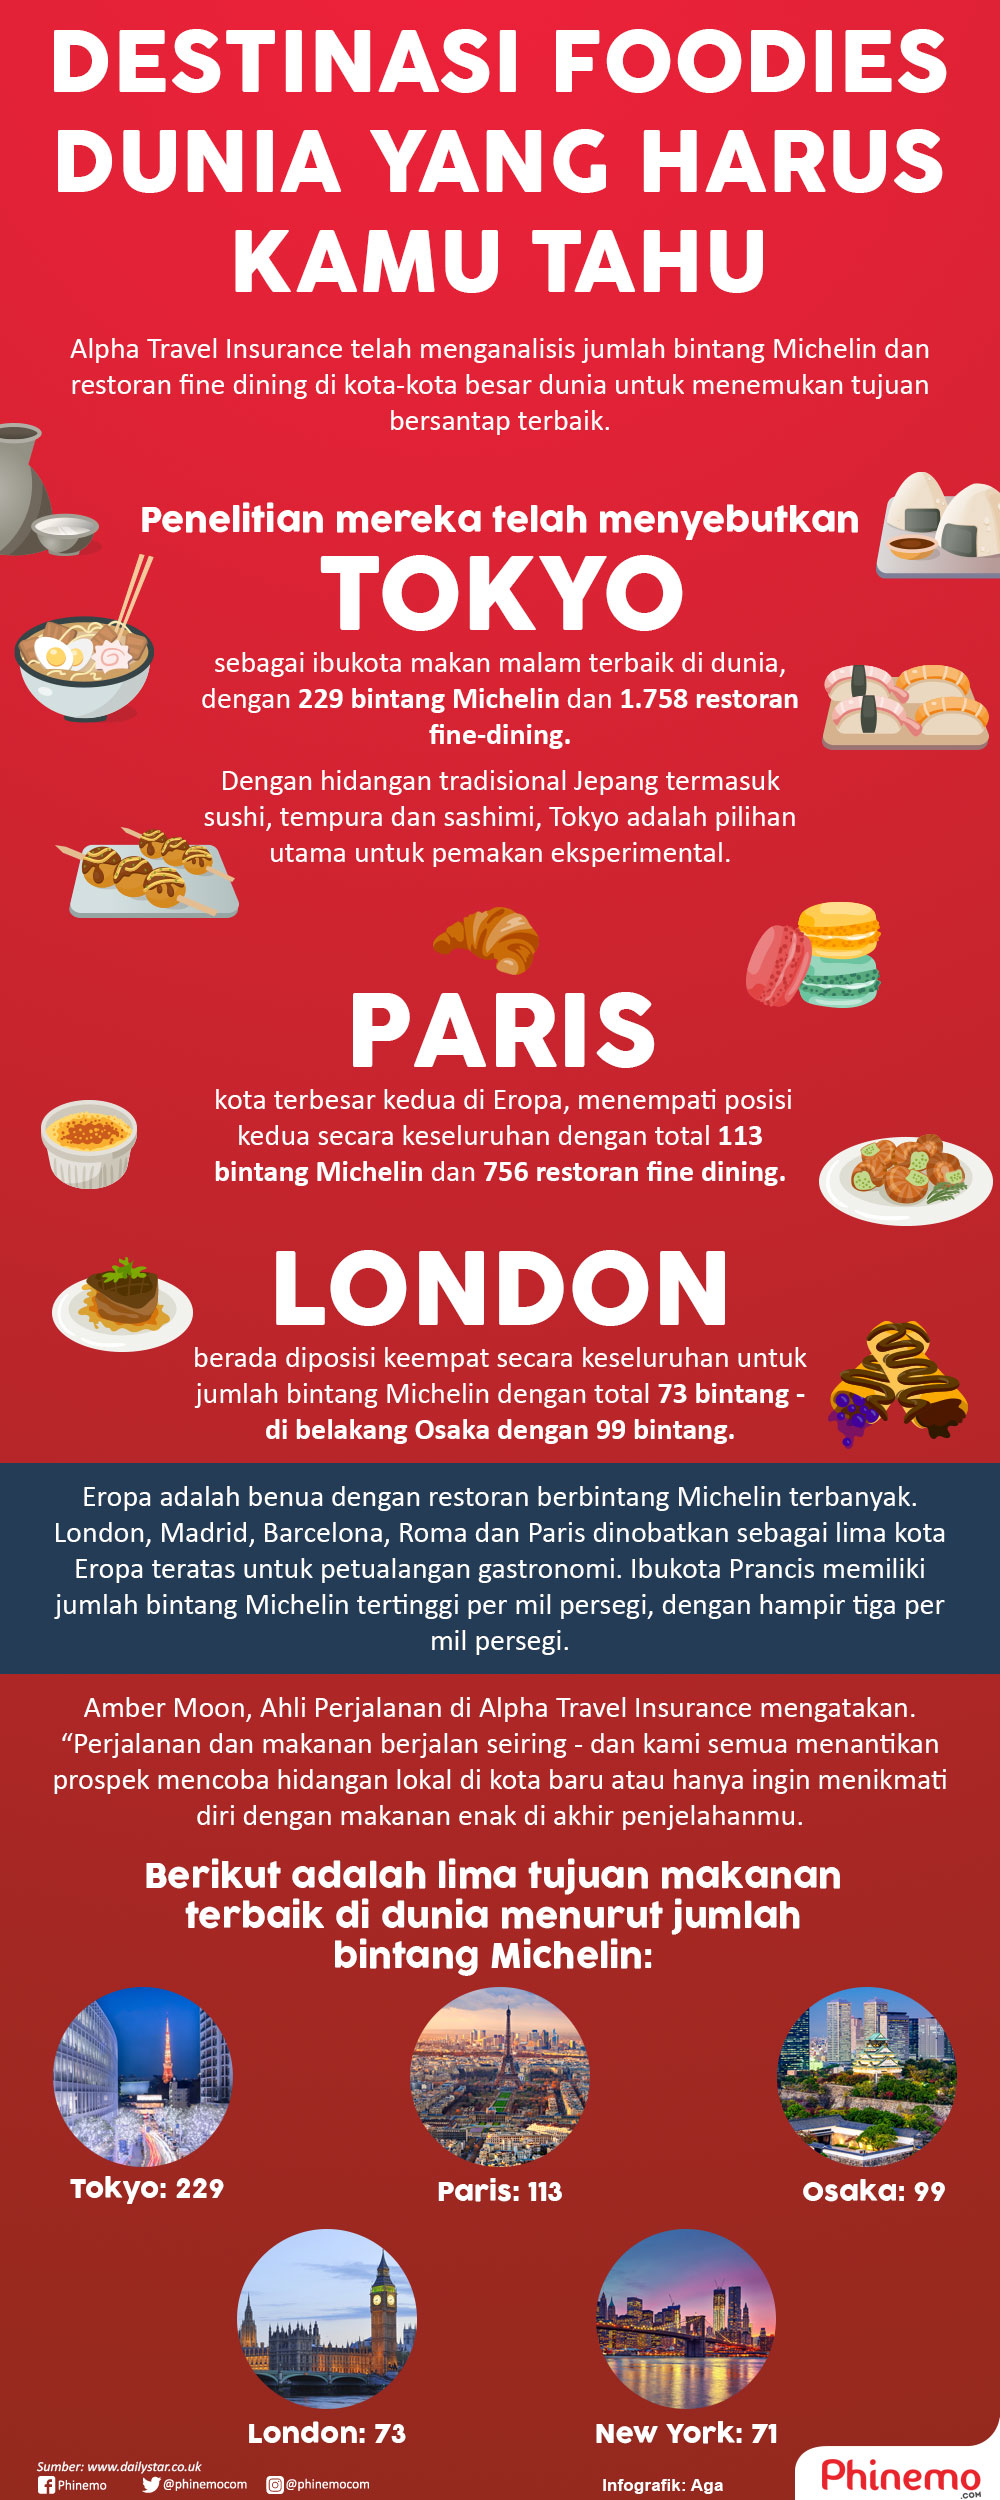 Infografik Destinasi Foodies Dunia yang Harus Kamu Tahu